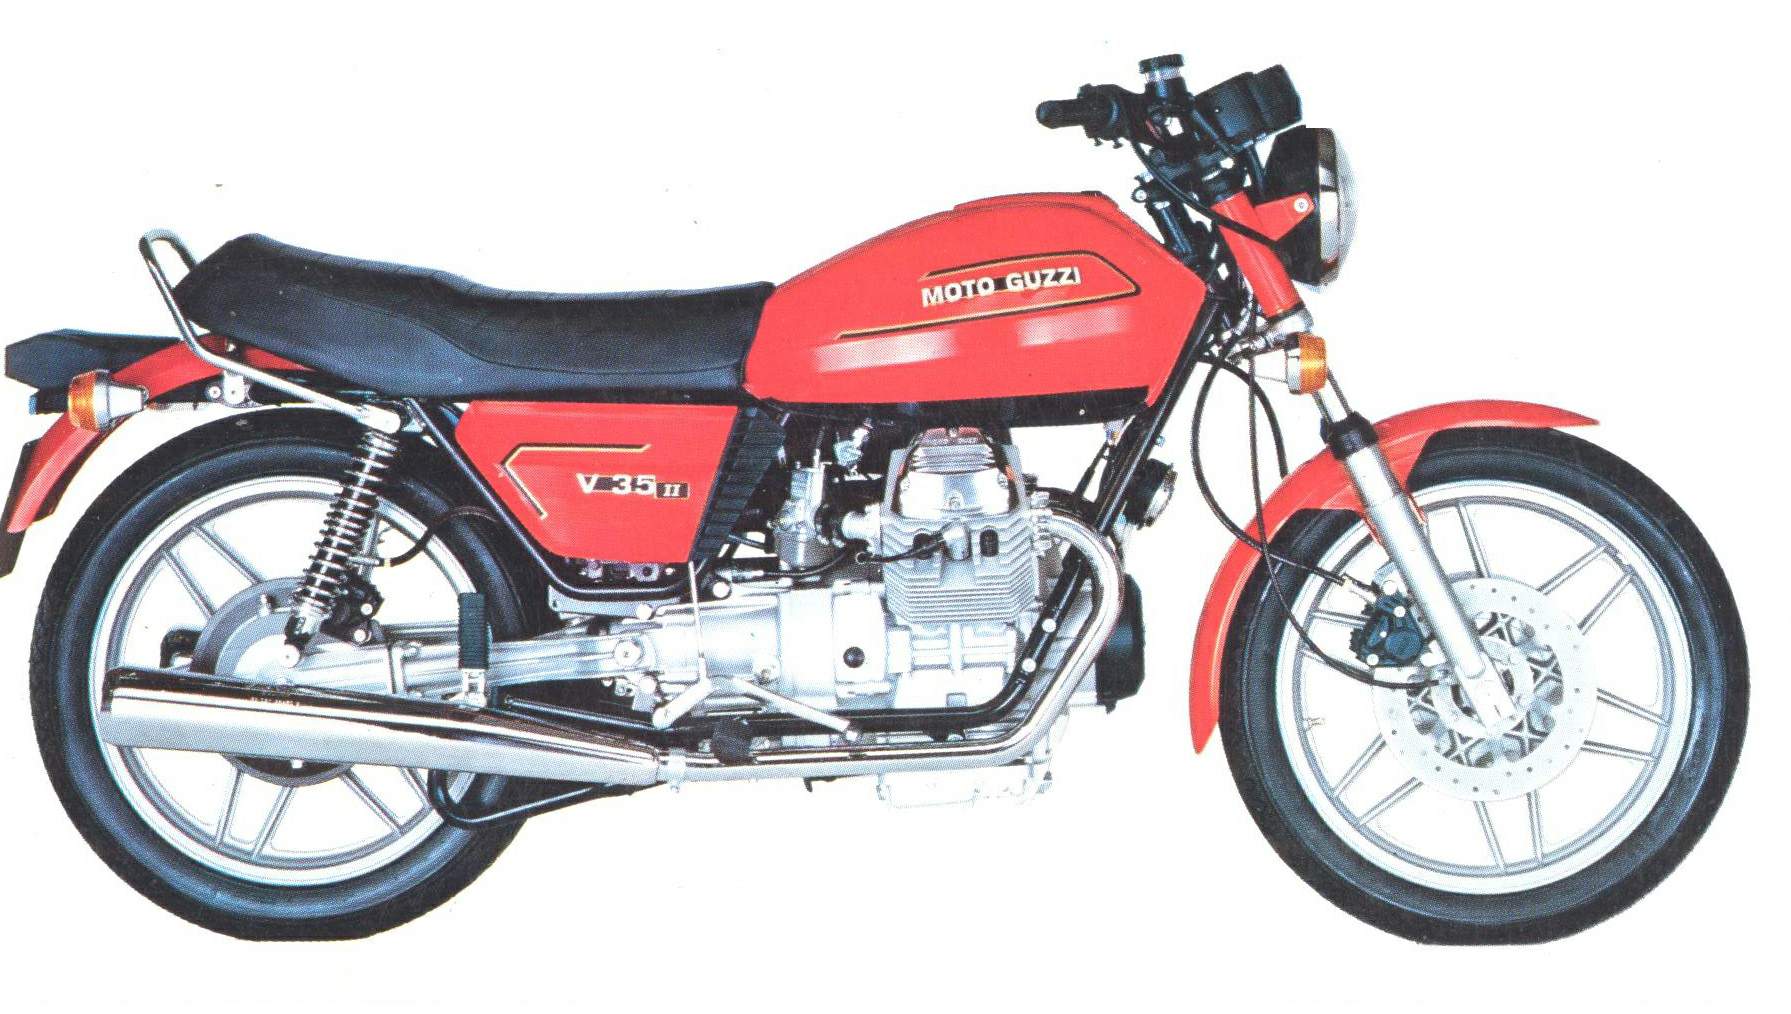 Especificaciones técnicas Moto Guzzi V 35II